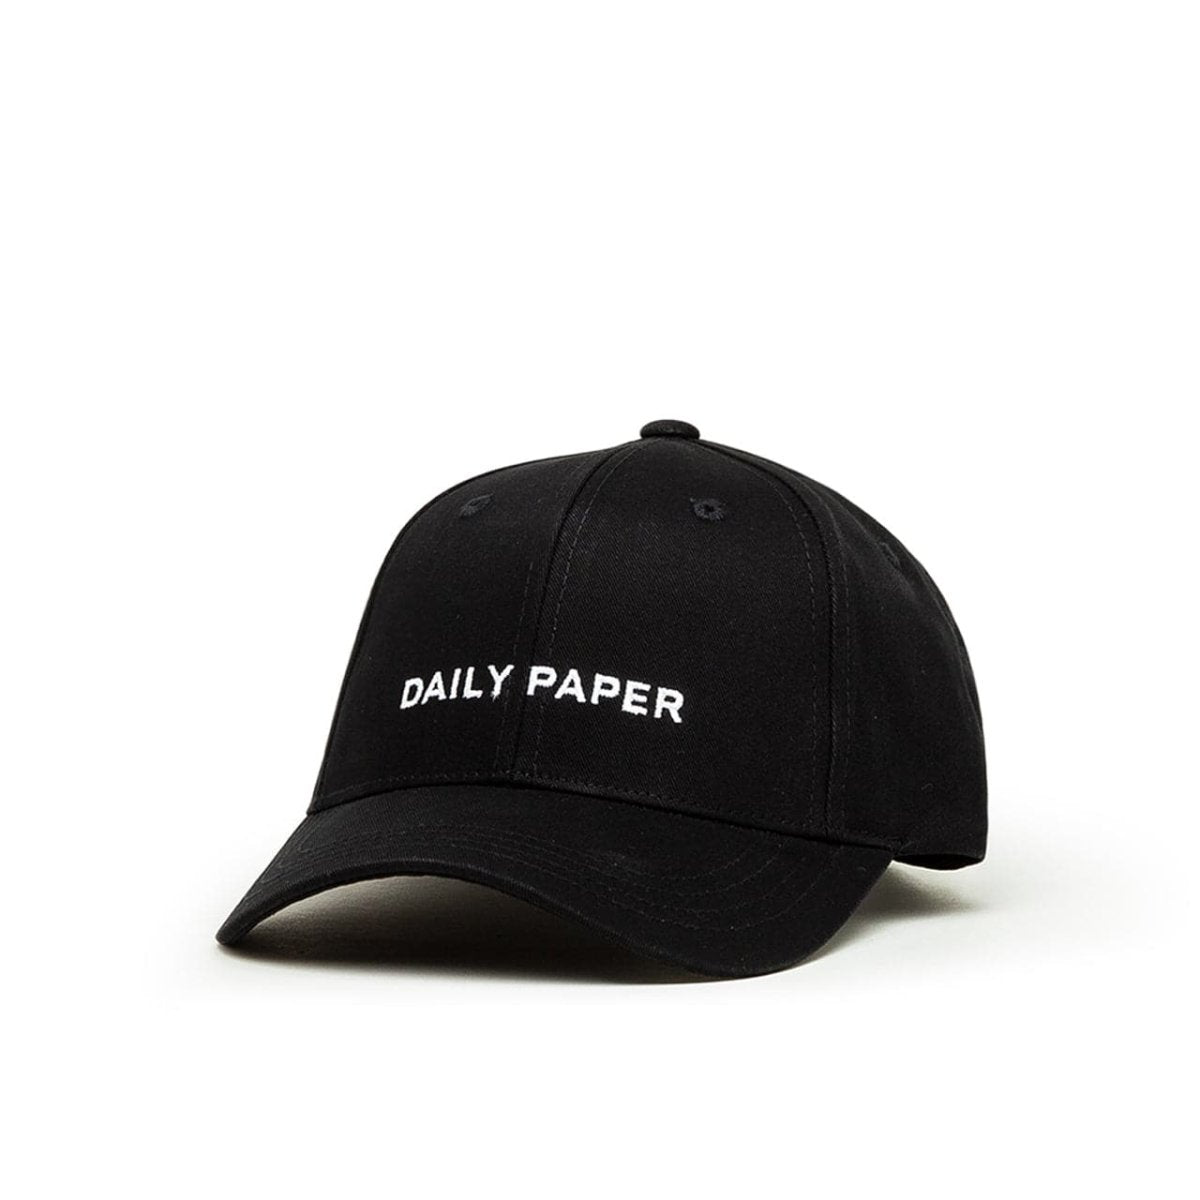 Daily Paper Ecap Baseball Cap (Schwarz)  - Allike Store